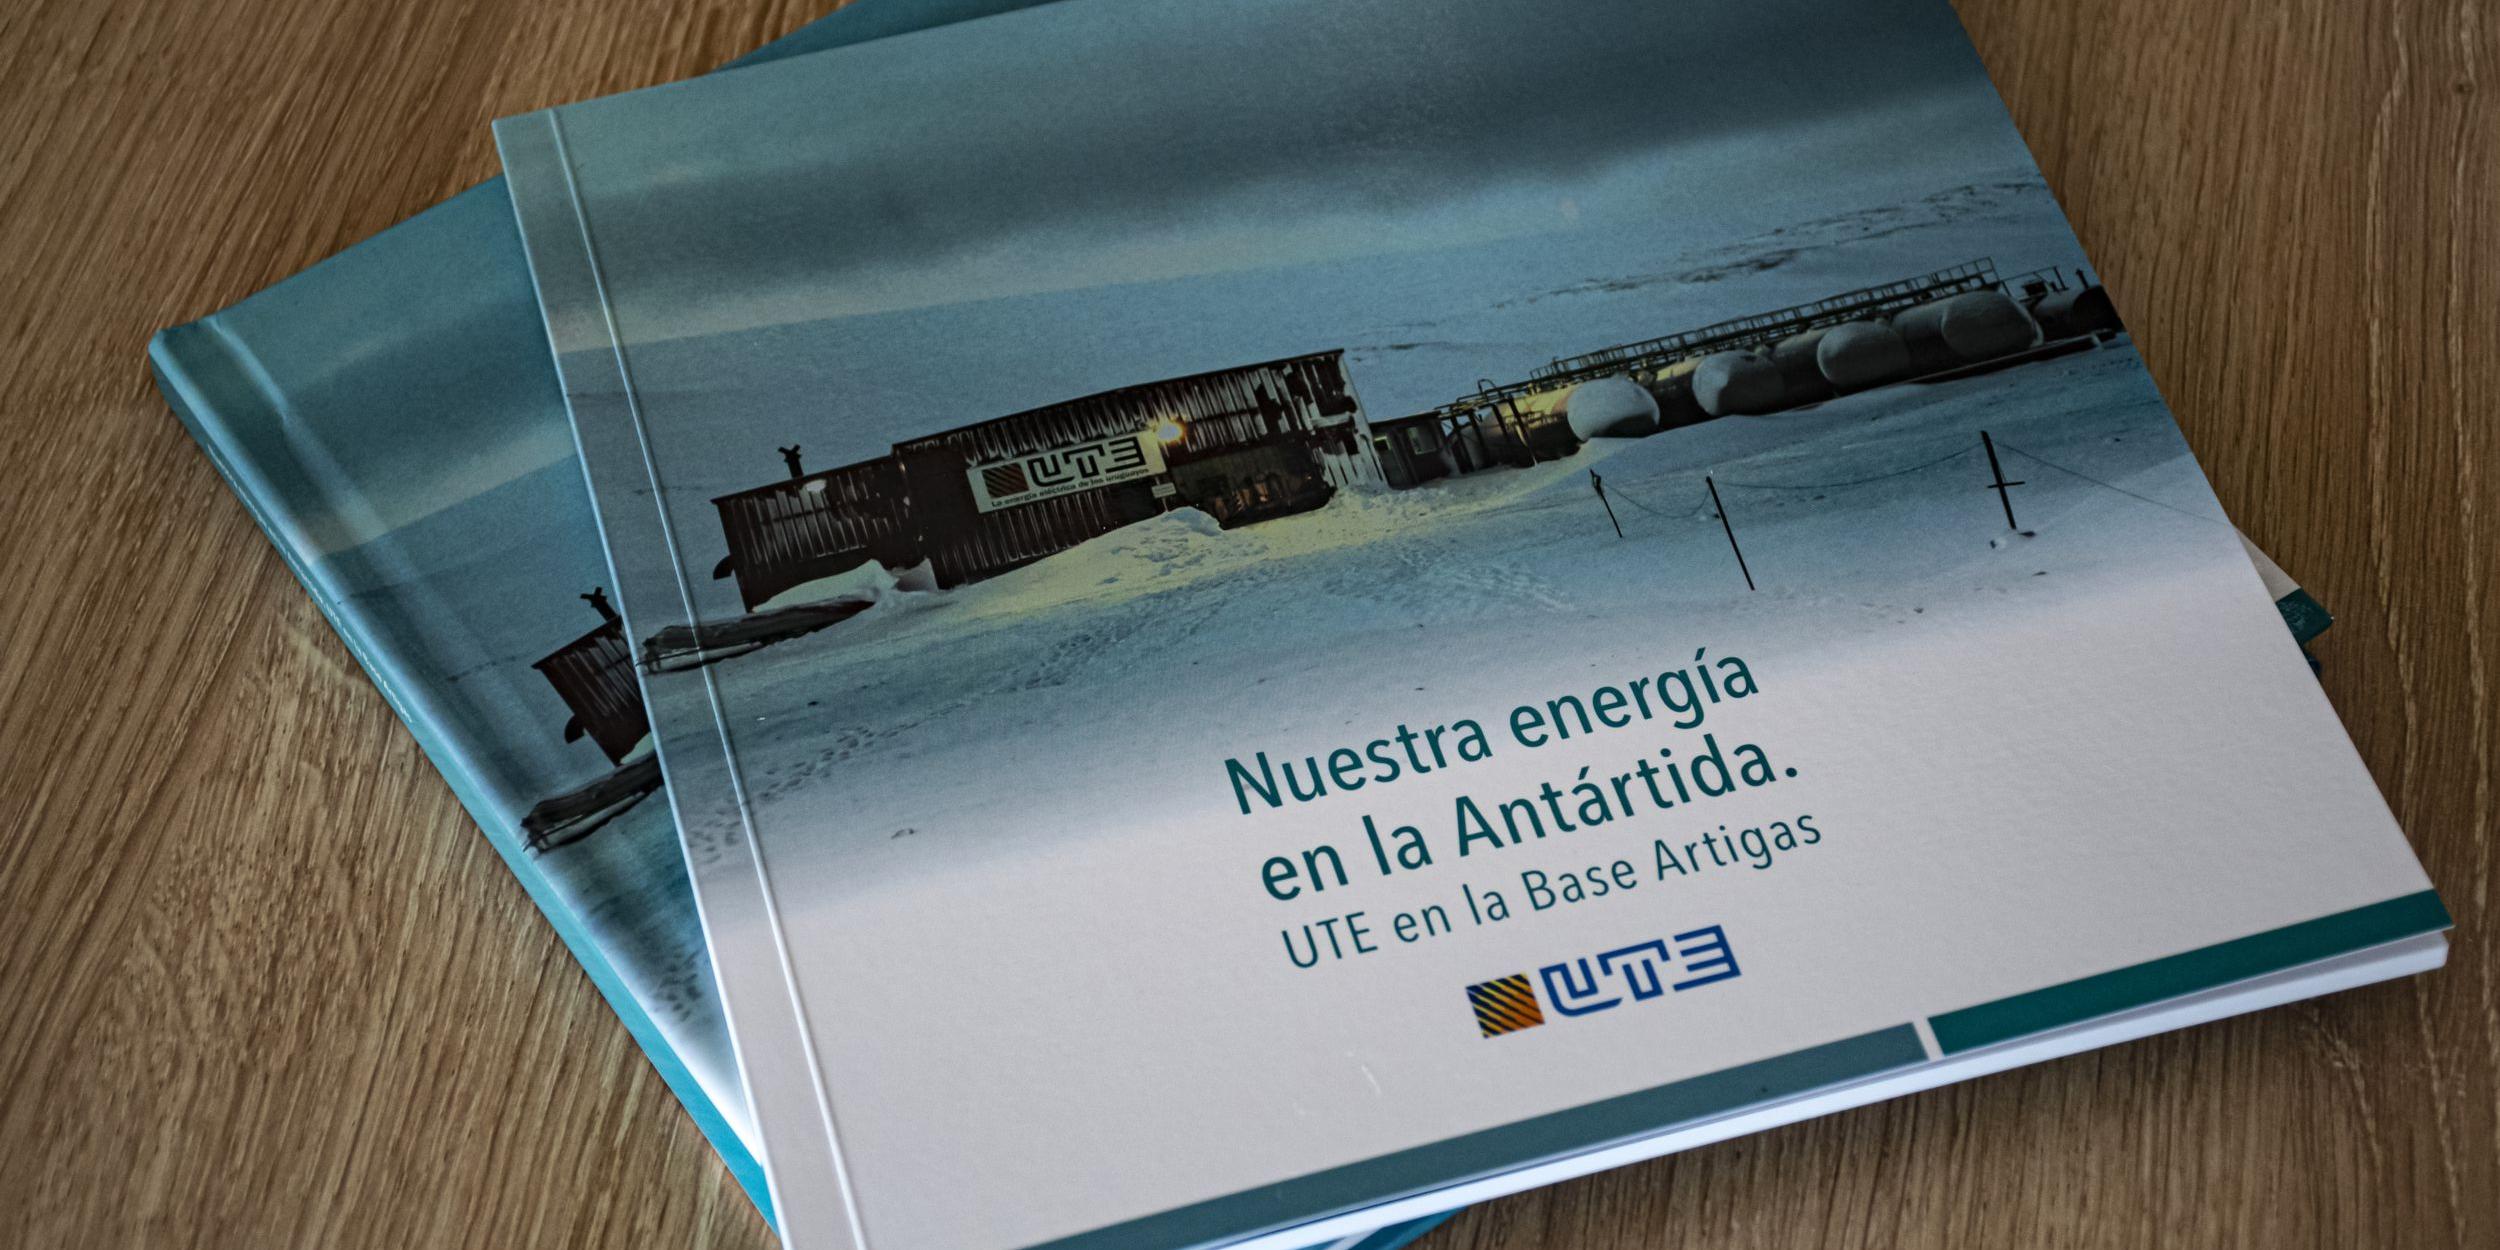 Nuestra energía en la Antártida: UTE en la Base Artigas